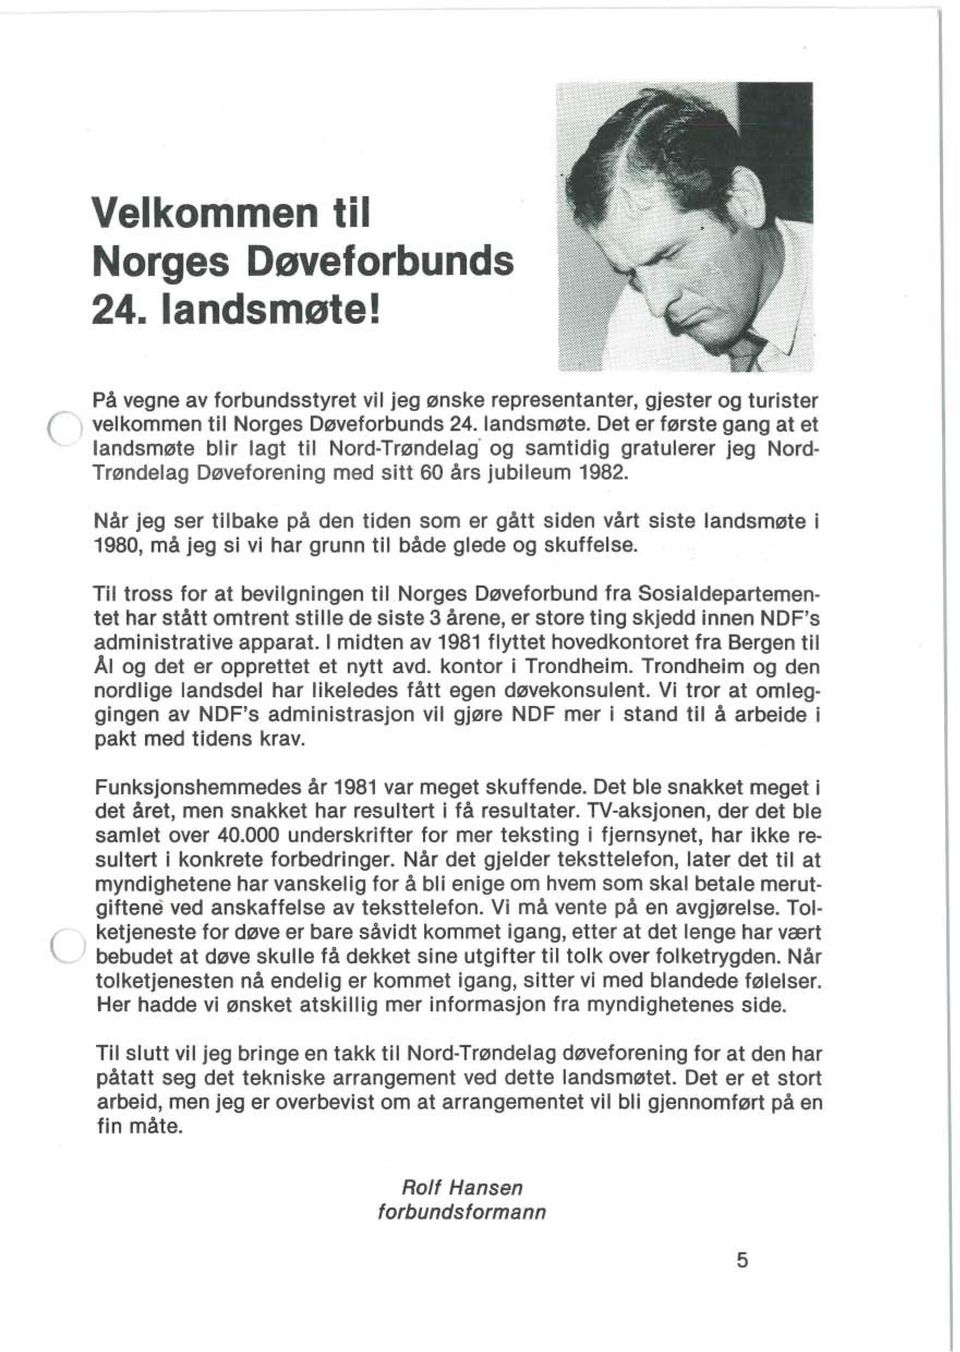 Til tross for at bevilgningen til Norges Døveforbund fra Sosialdepartementet har stått omtrent stille de siste 3 årene, er store ting skjedd innen NDF's administrative apparat.